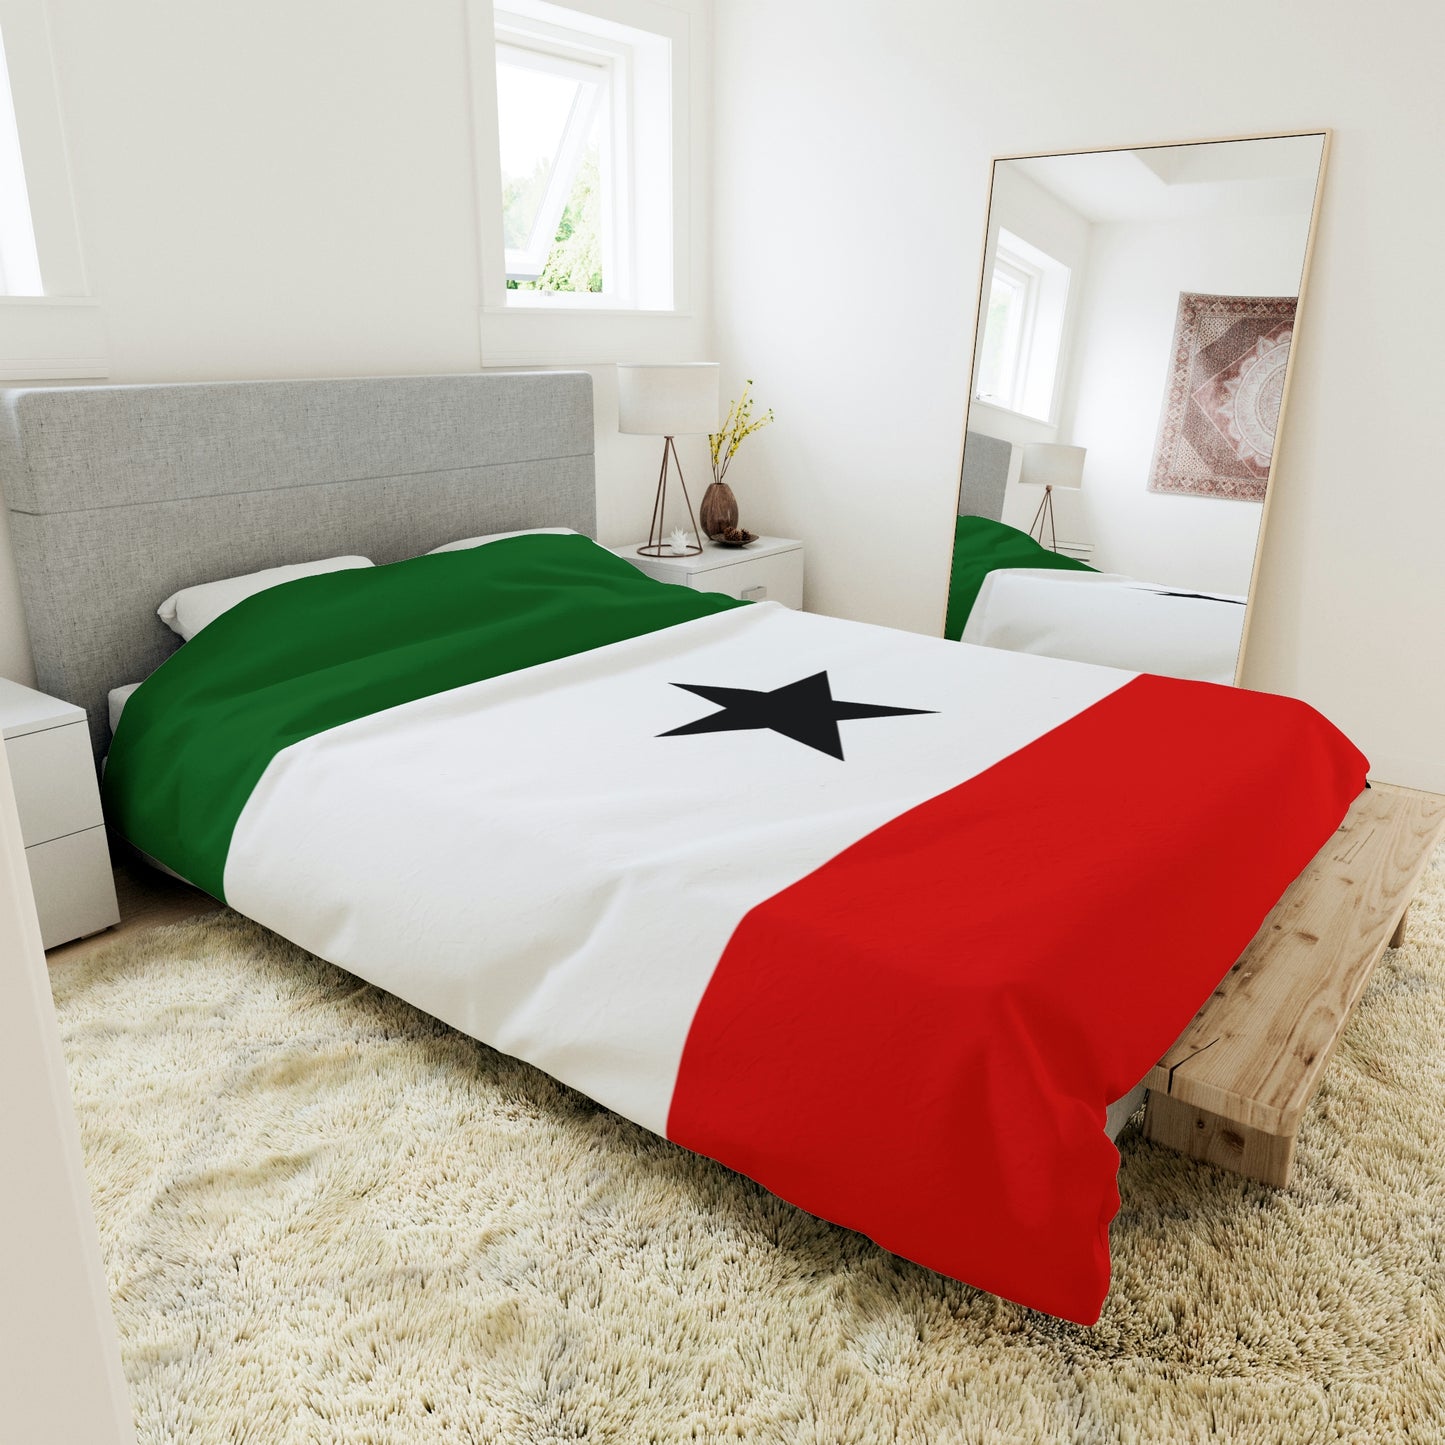 Duvet Cover - Somaliland Flag